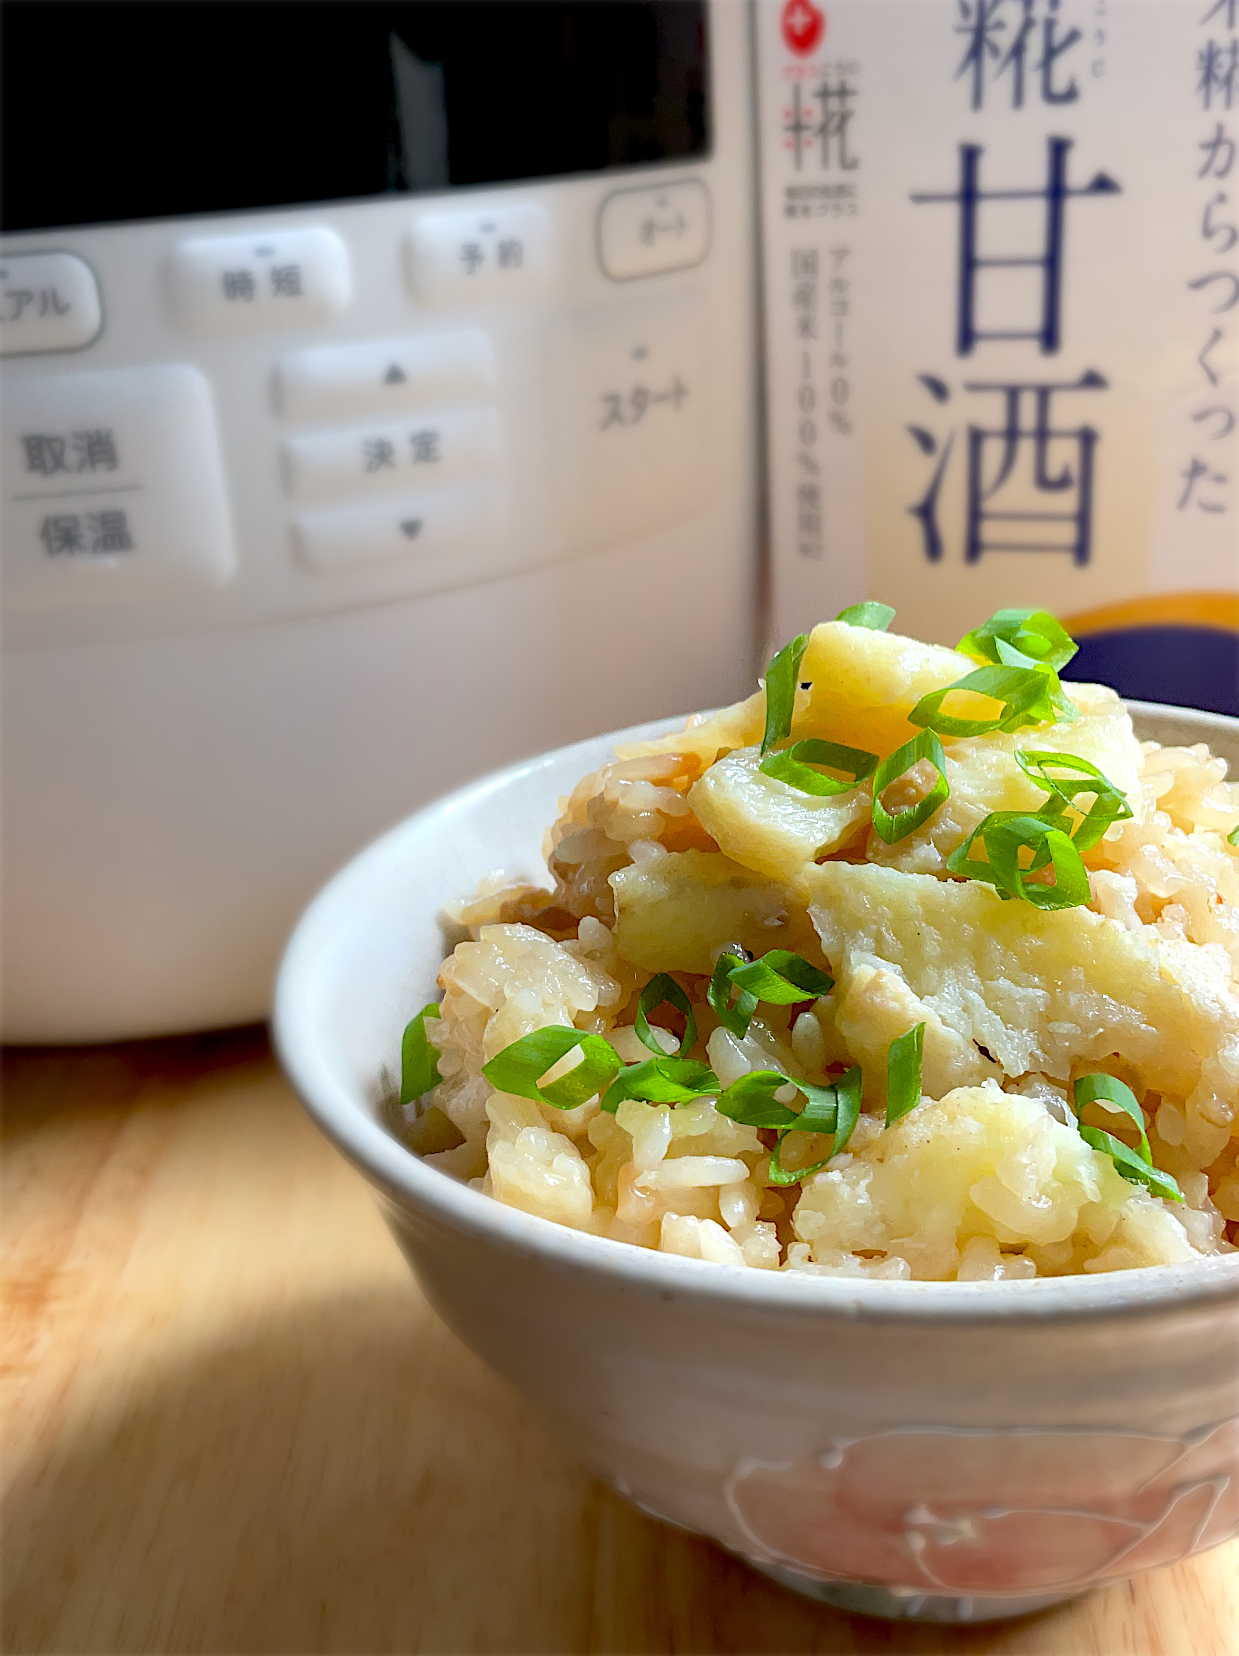 自然薯の炊き込みご飯🍚甘酒煮